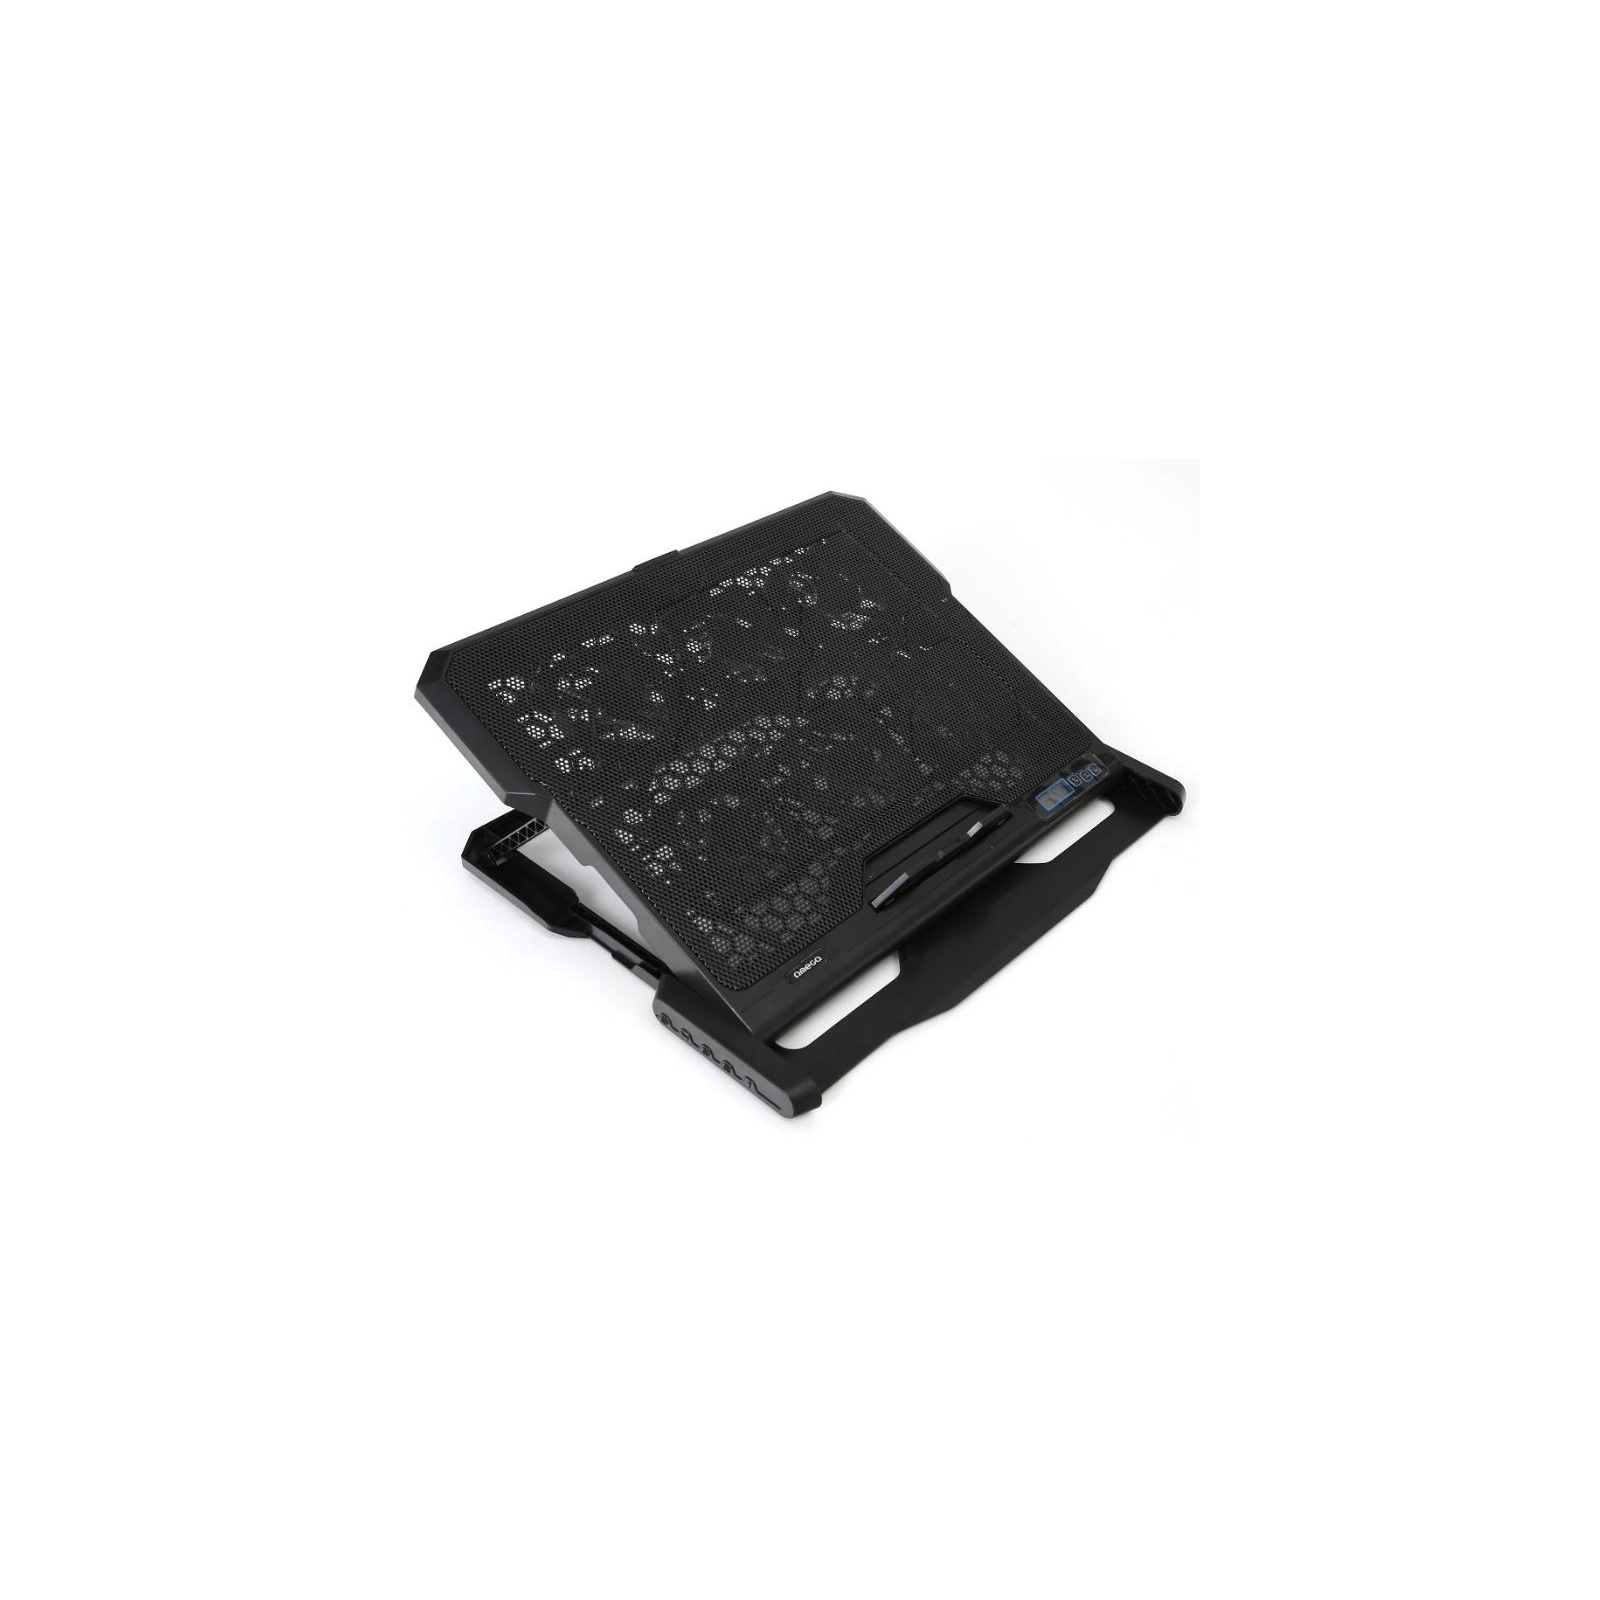 Подставка для ноутбука Omega Laptop Cooler pad COOLWAVE 6X fan black (OMNCP6F) изображение 2